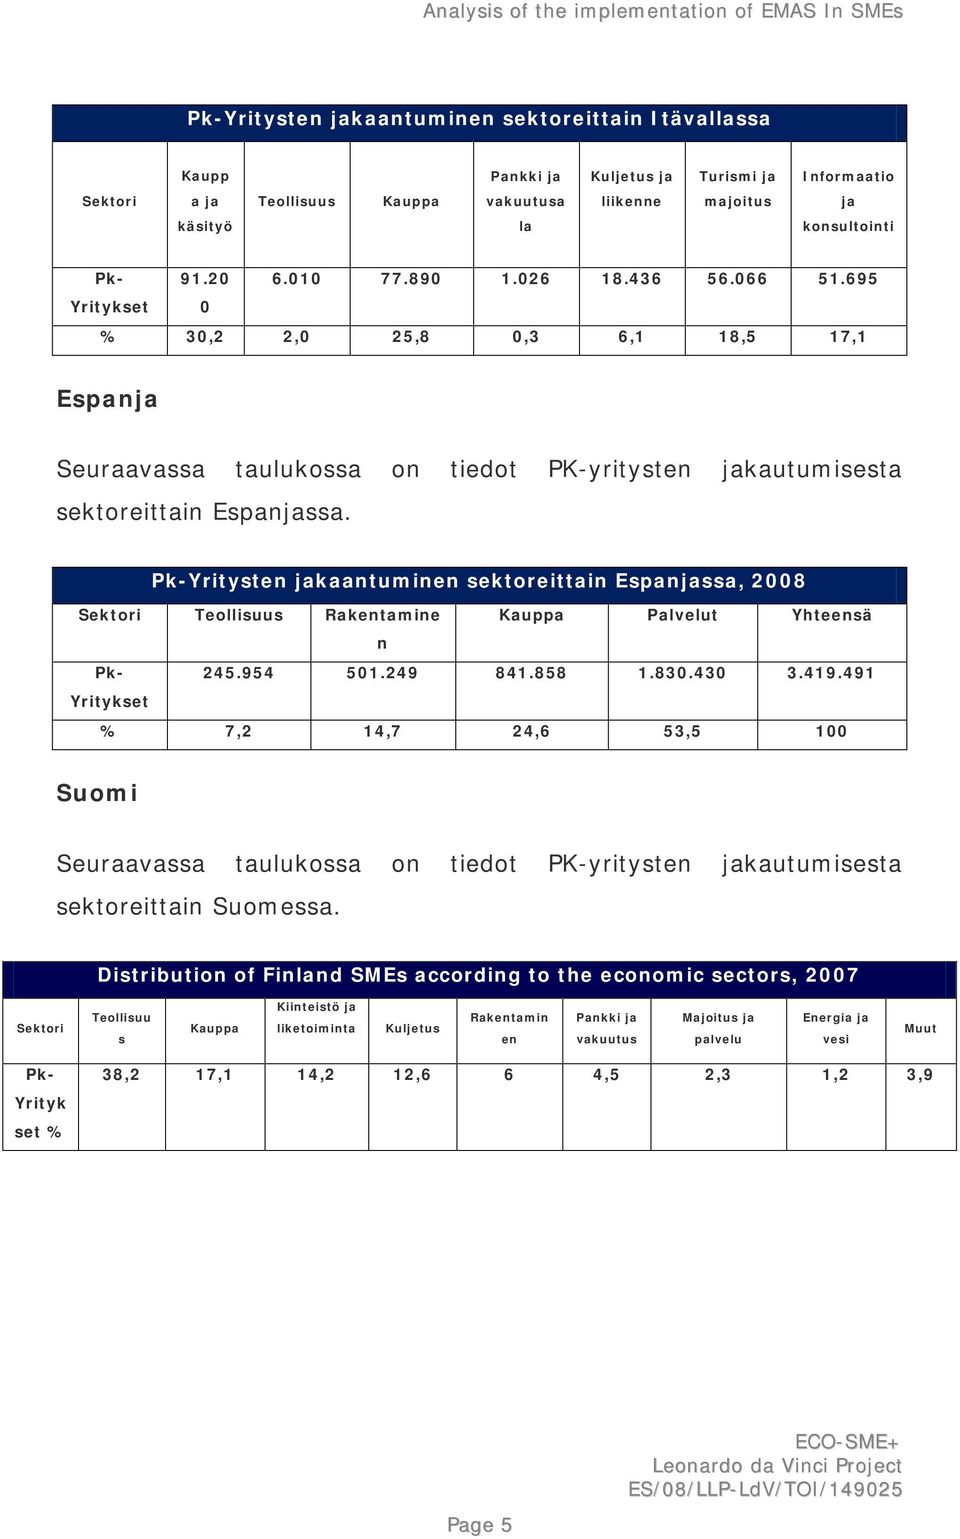 Distribution of Finland SMEs according to the economic sectors, 2007 Sektori Teollisuu s Kauppa Kiinteistö ja liketoiminta Kuljetus Rakentamin en Pankki ja vakuutus Majoitus ja palvelu Energia ja